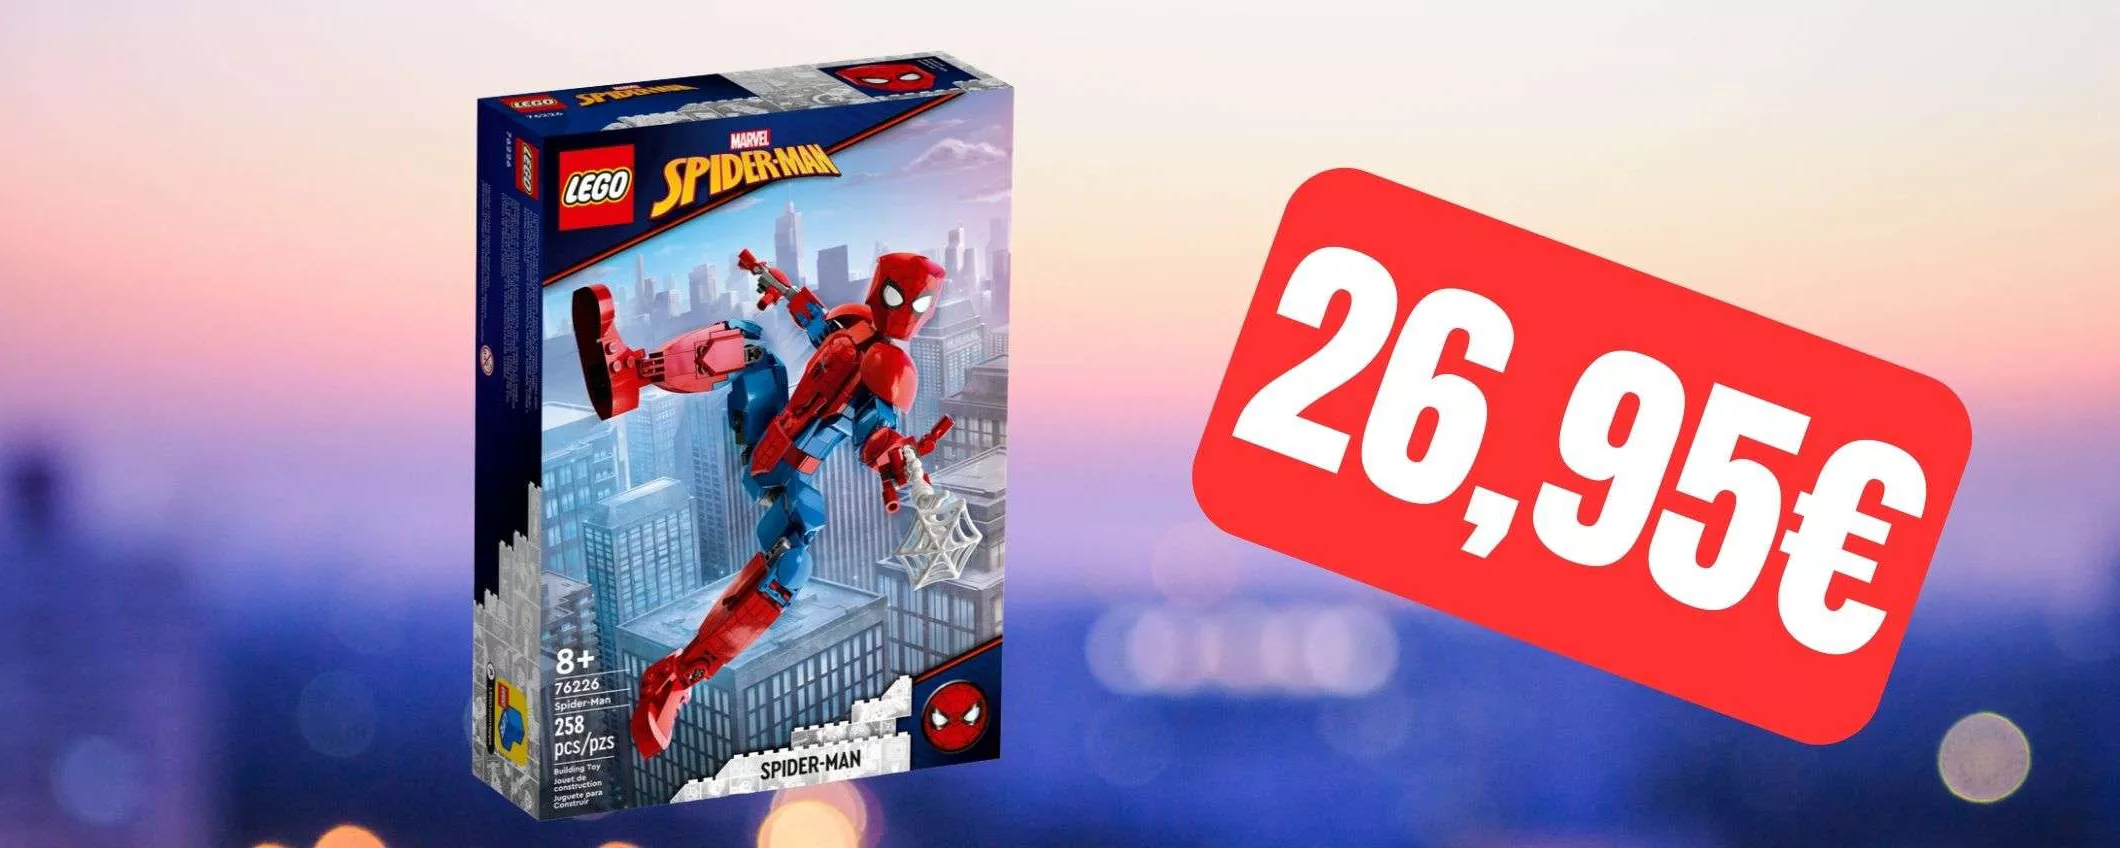 Il LEGO Spider-Man è in offerta ad un SUPER PREZZO su eBay